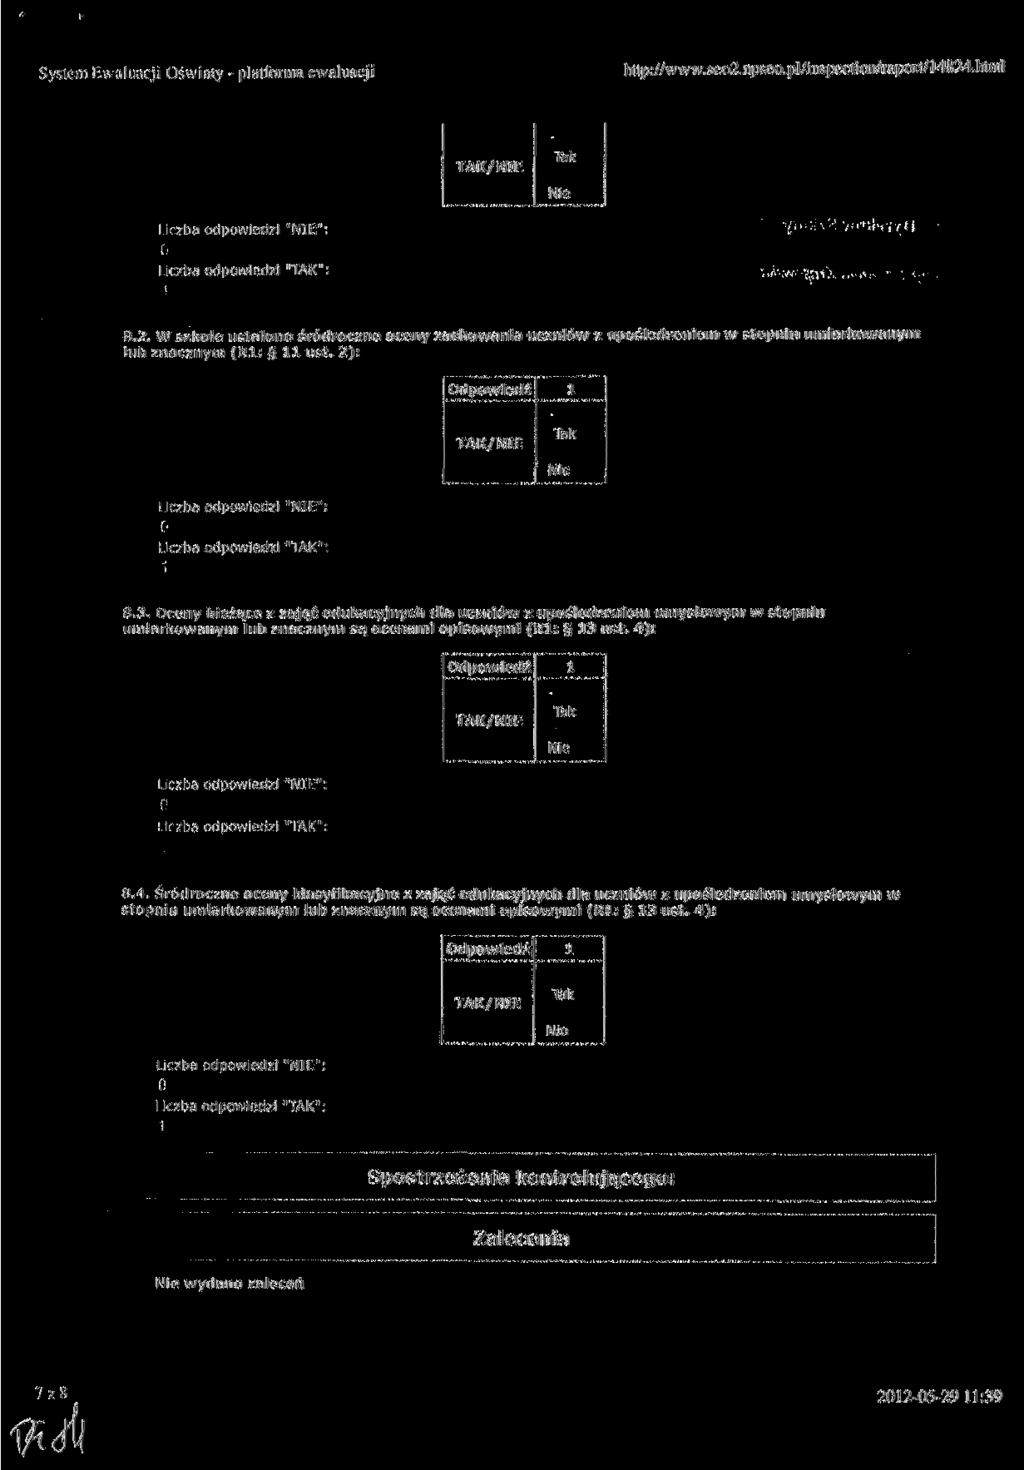 System Ewaluacji światy - platforma ewaluacji http://www.seo2.tpseo.pl/inspection/raportj'4824.himl 8,2.